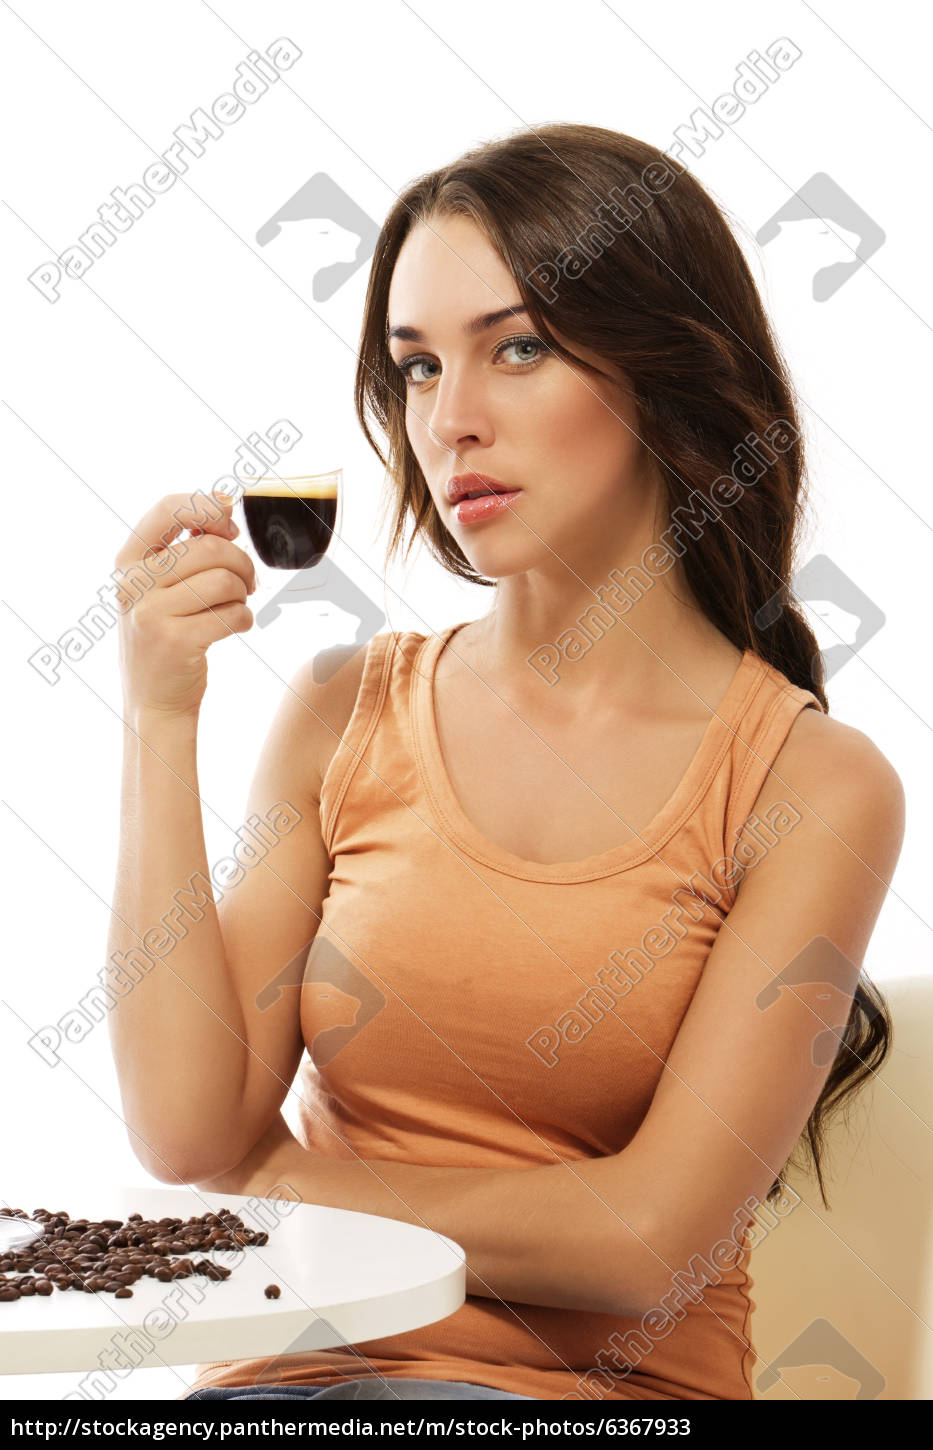 Dos tazas de café espresso imagen de archivo. Imagen de bebida